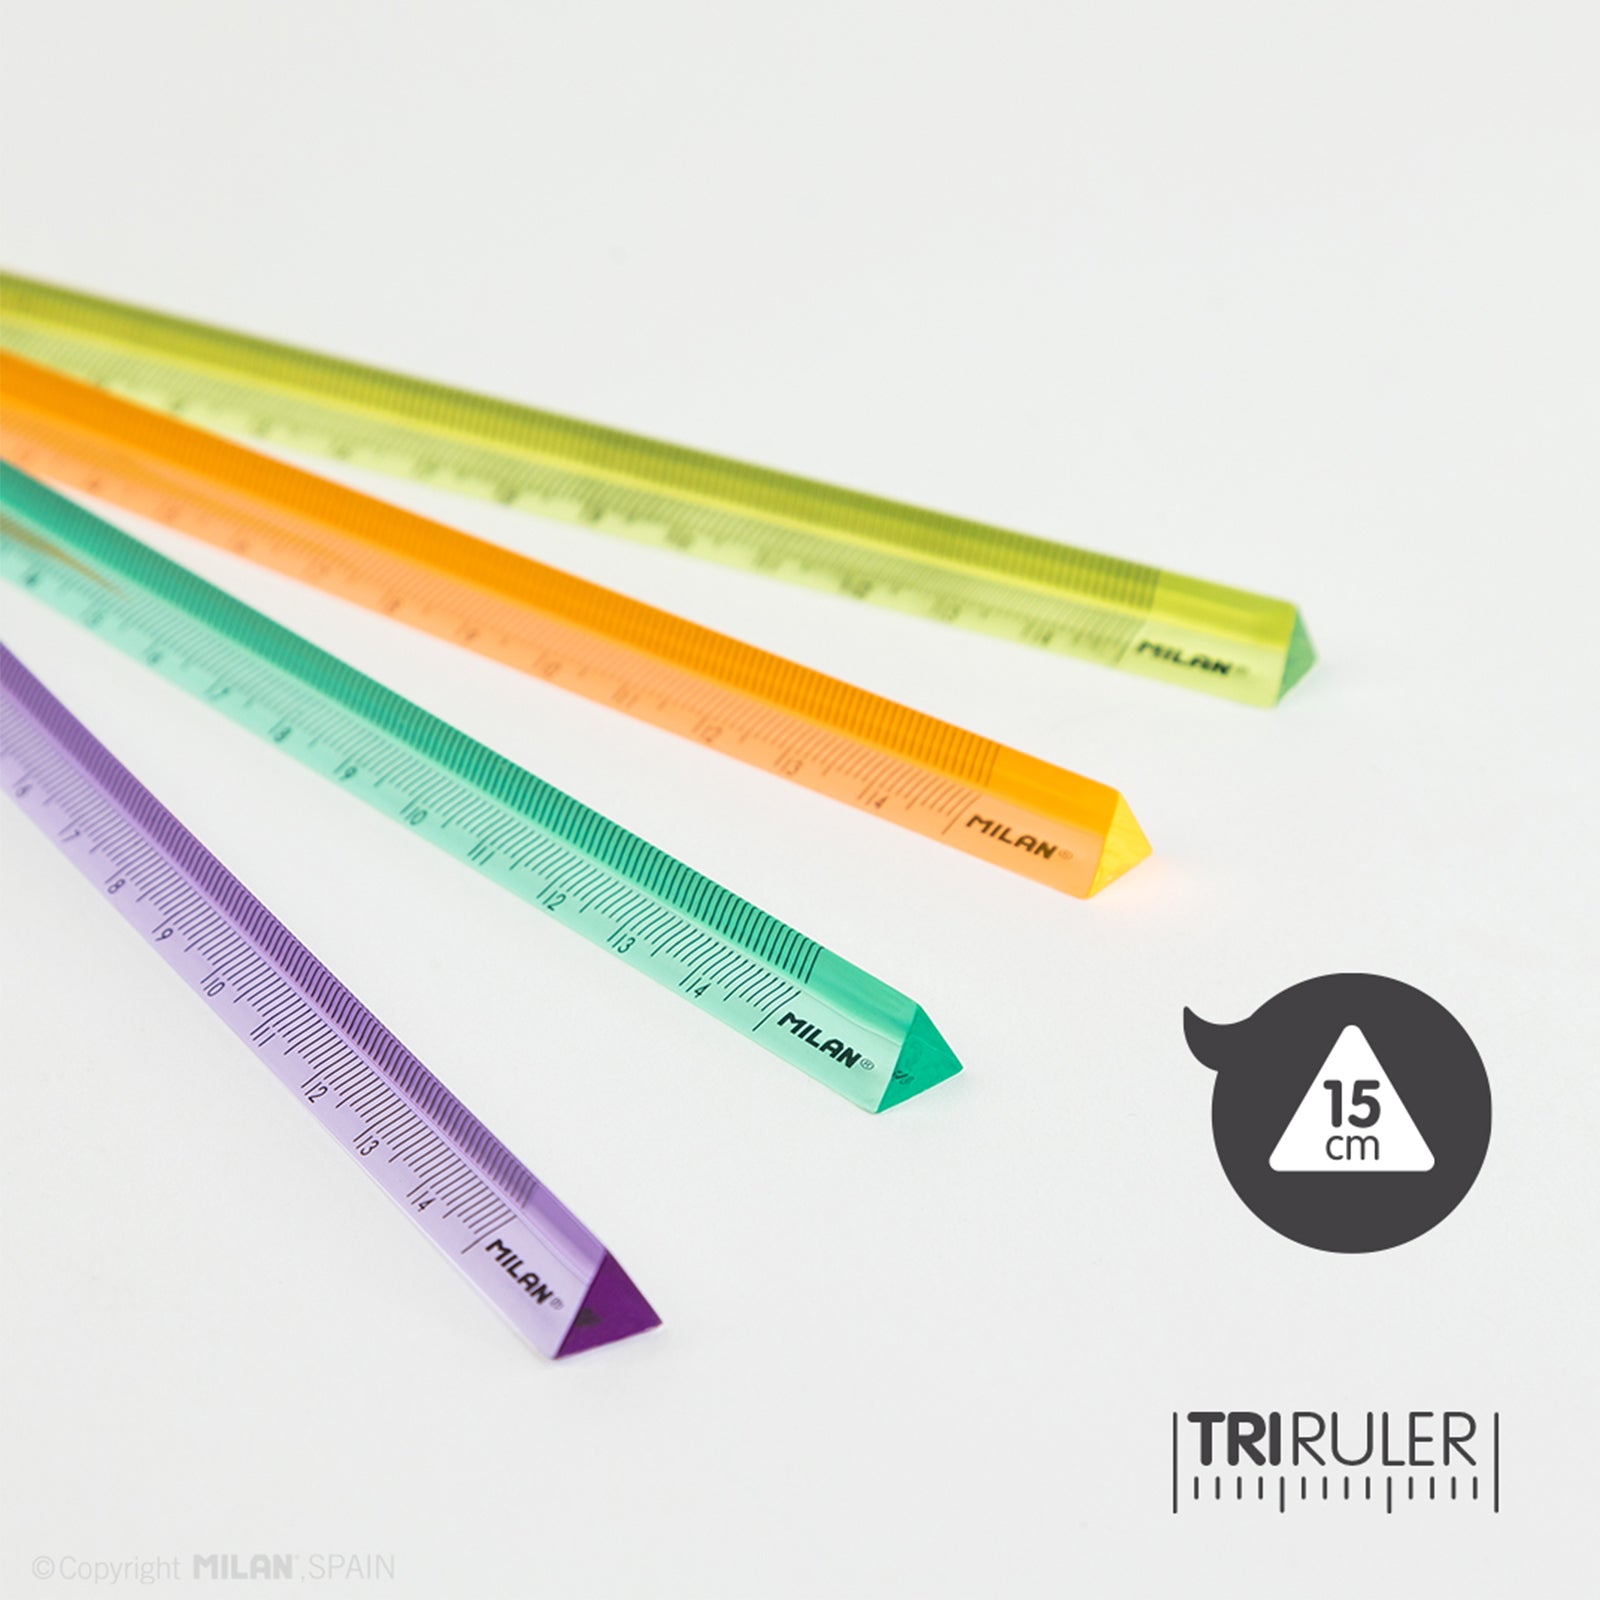 MILAN New Look - Regla Triangular 15 cm en Plástico Rígido Transparente